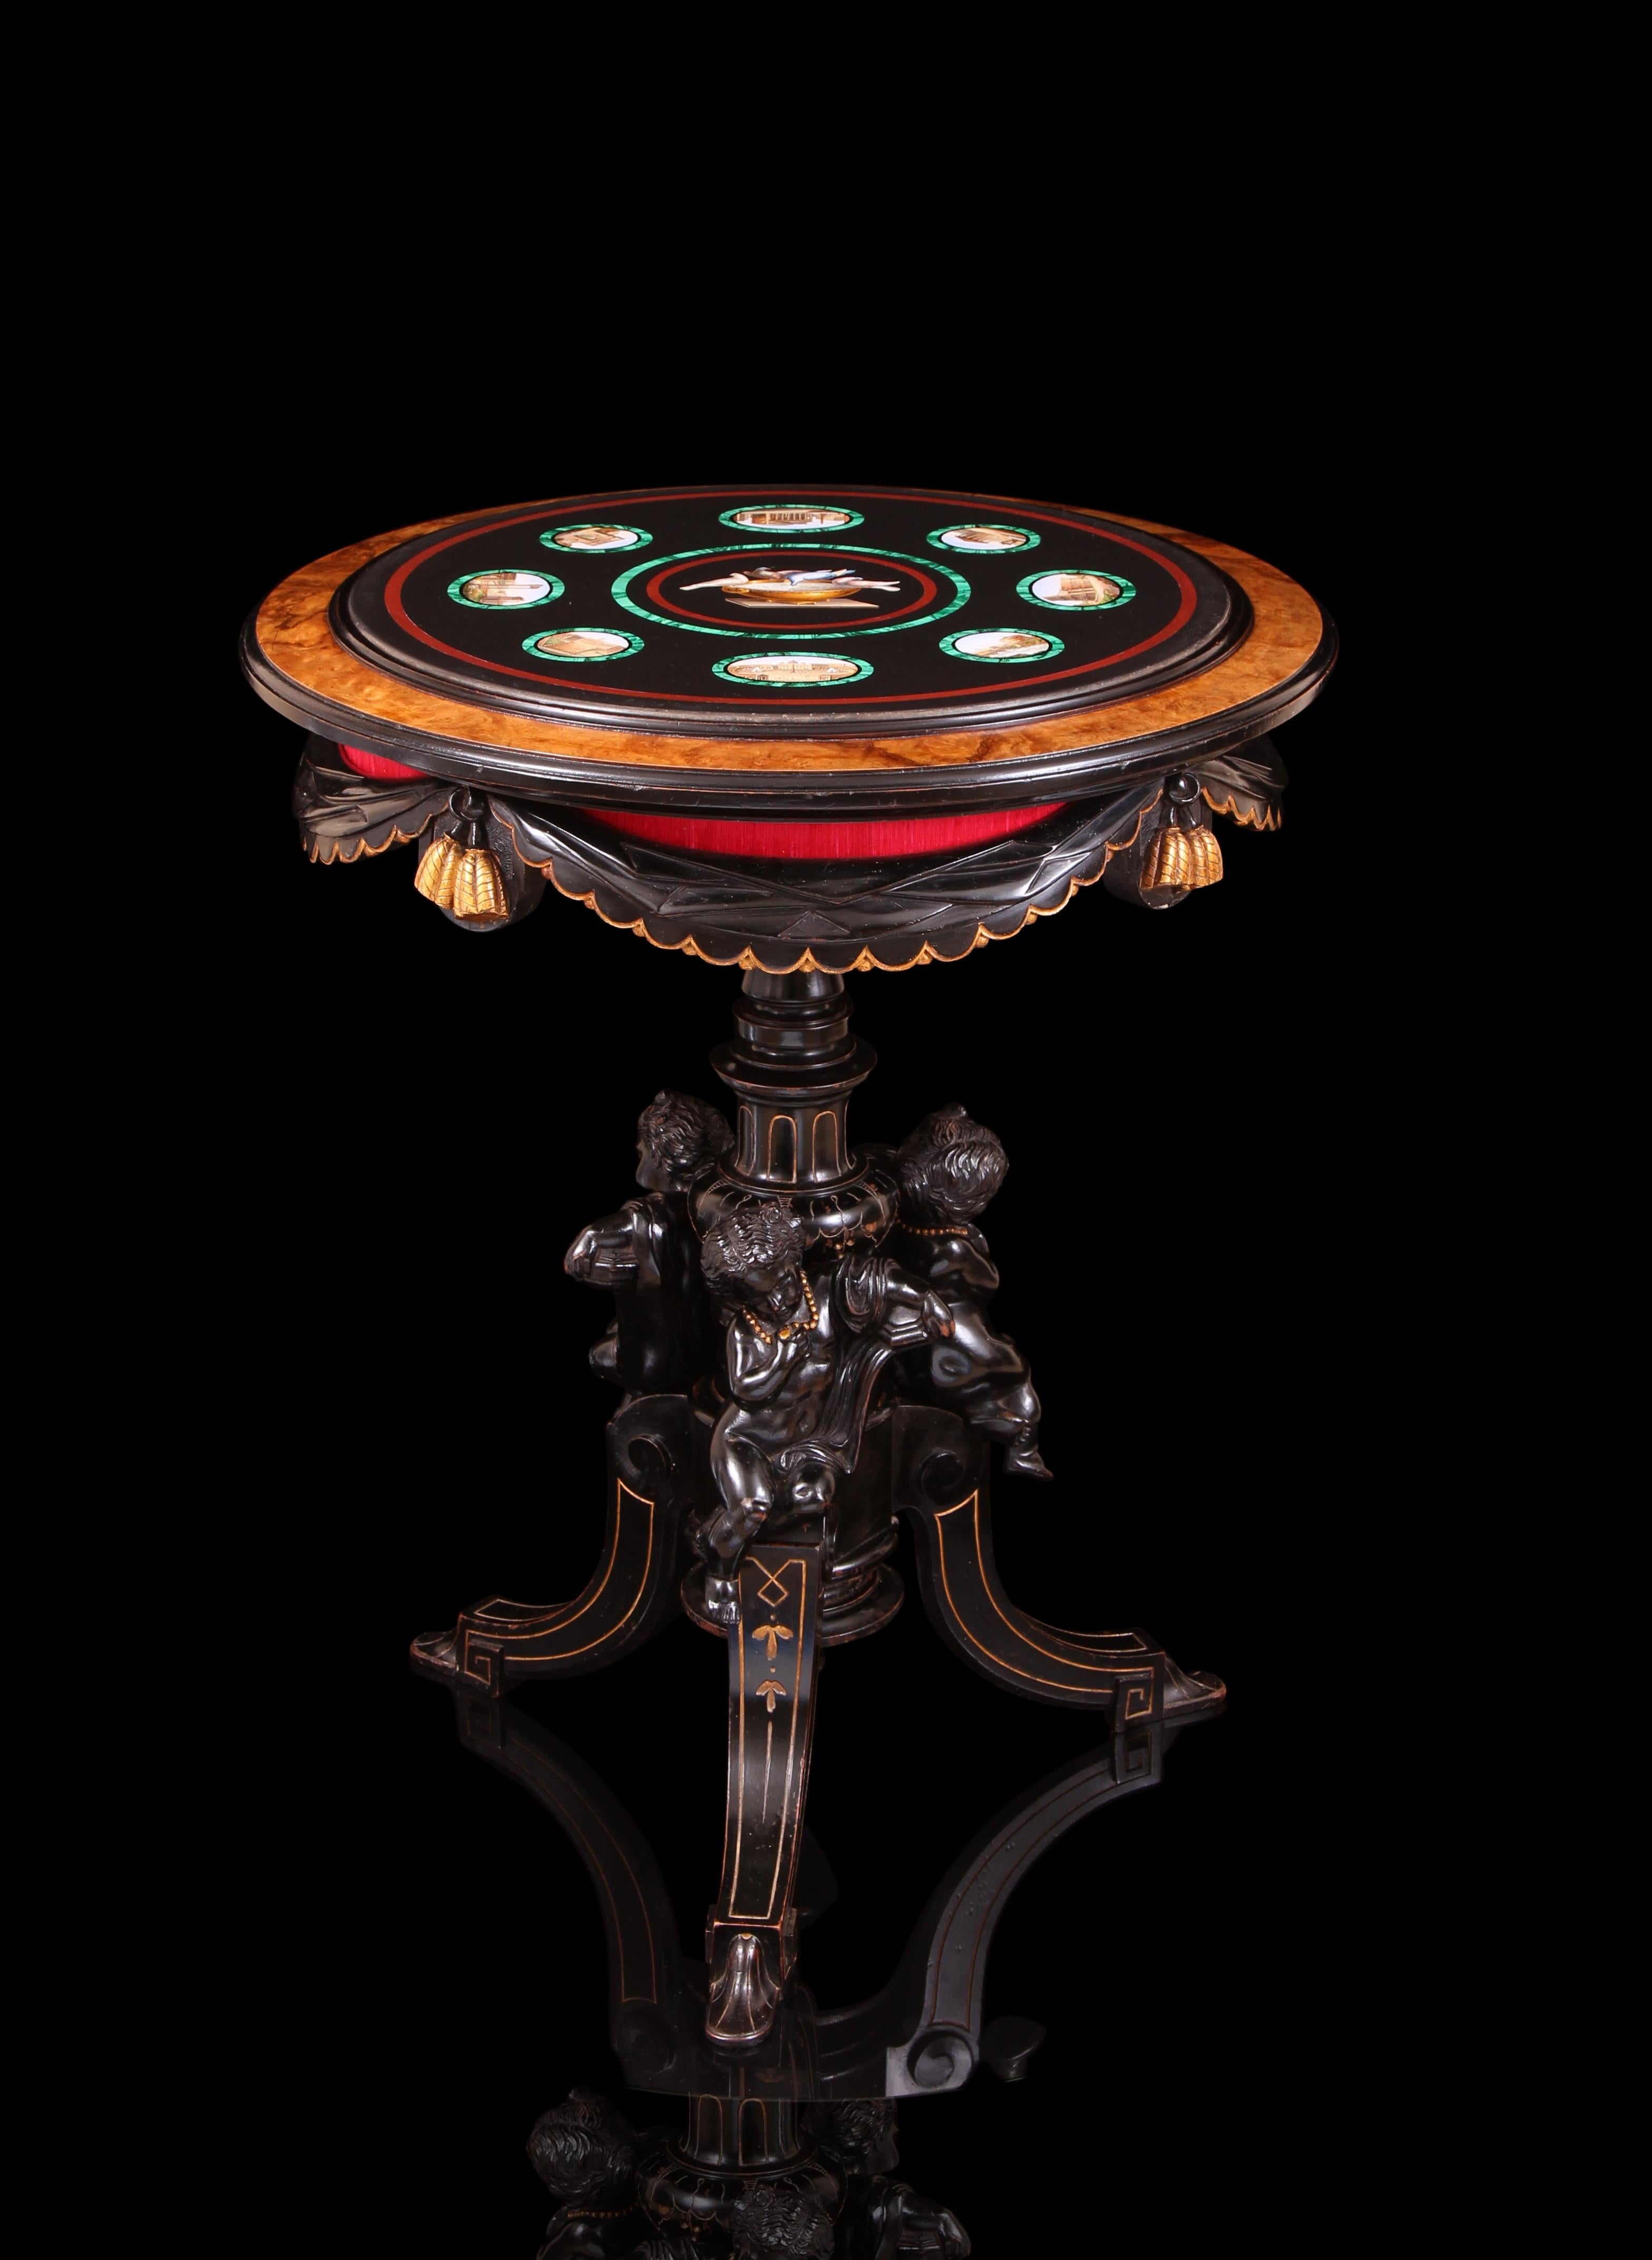 Wichtige & seltene 19. Jahrhundert Italienisch Mikromosaik, bronziert & Paket vergoldet Holztisch. Ein exquisit gestaltetes Meisterwerk, bei dem der romantische und opernhafte Sockel und das atemberaubende Oberteil komplett aufeinander abgestimmt